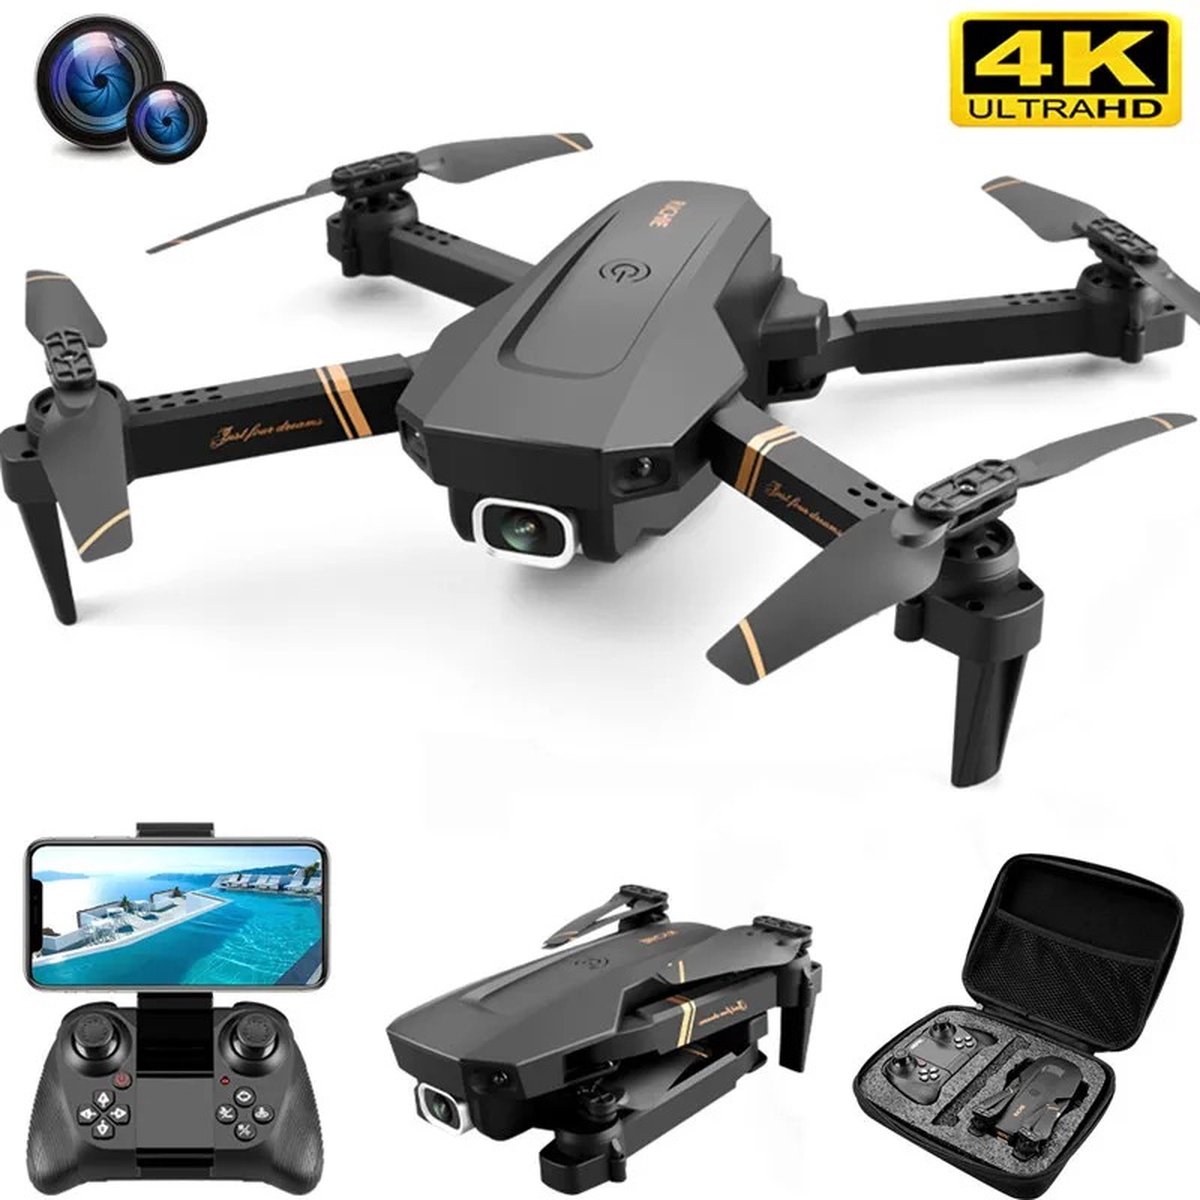 Ghani Winkeltje Drone - 4K Dual camera - Mini drone met camera - Track flight - Opvouwbaar - 40 minuten vliegtijd - Tot 100 meter afstand bestuurbaar